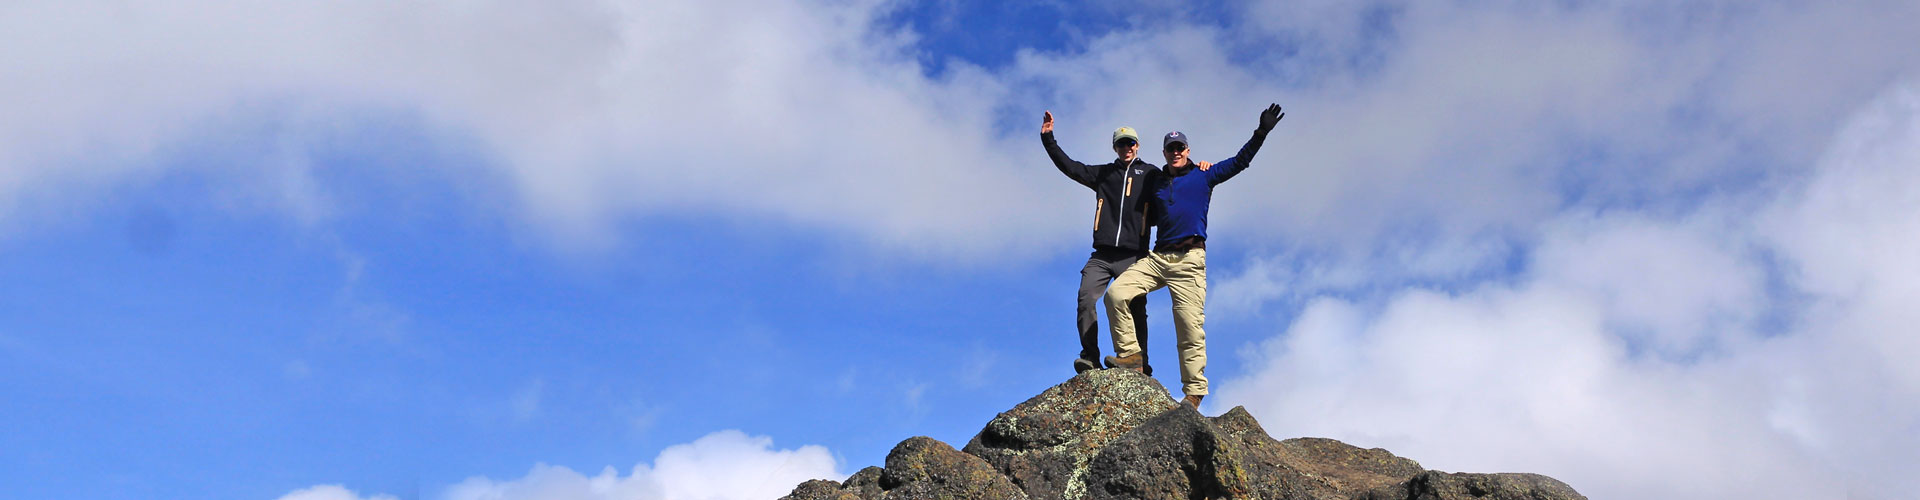 Trekkers on Mt. Kilimanjaro